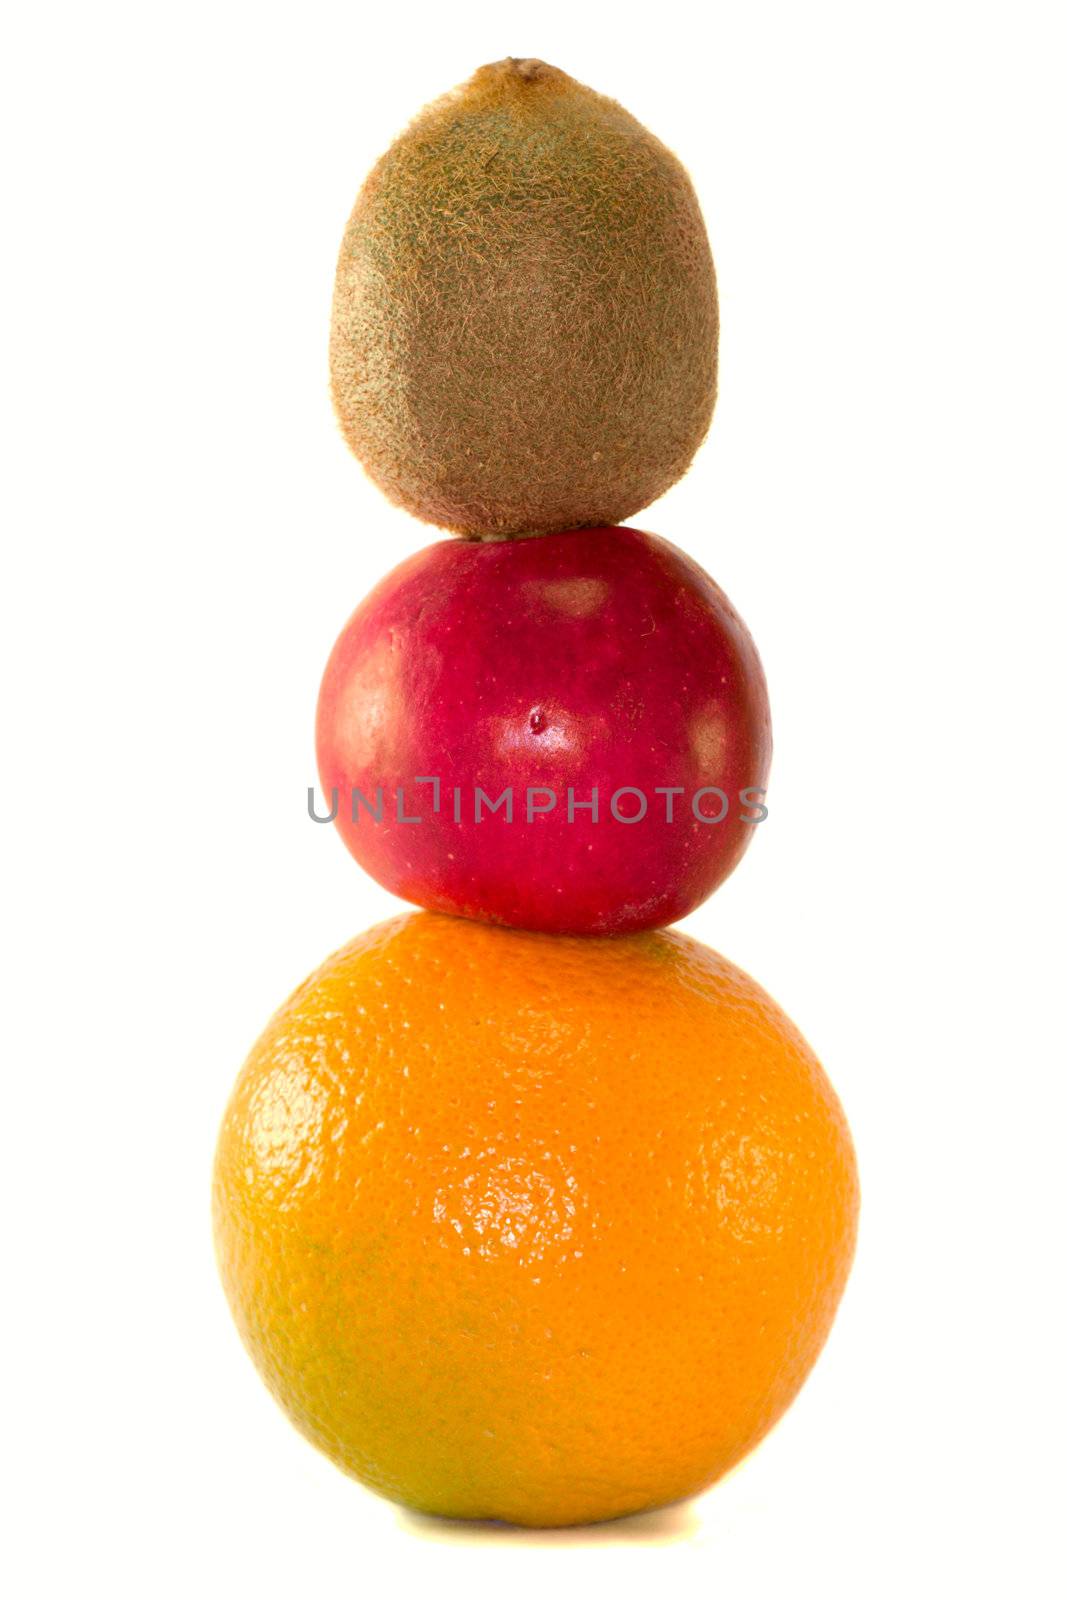 fruits pyramid from kiwi, apple and orange, isolated on white